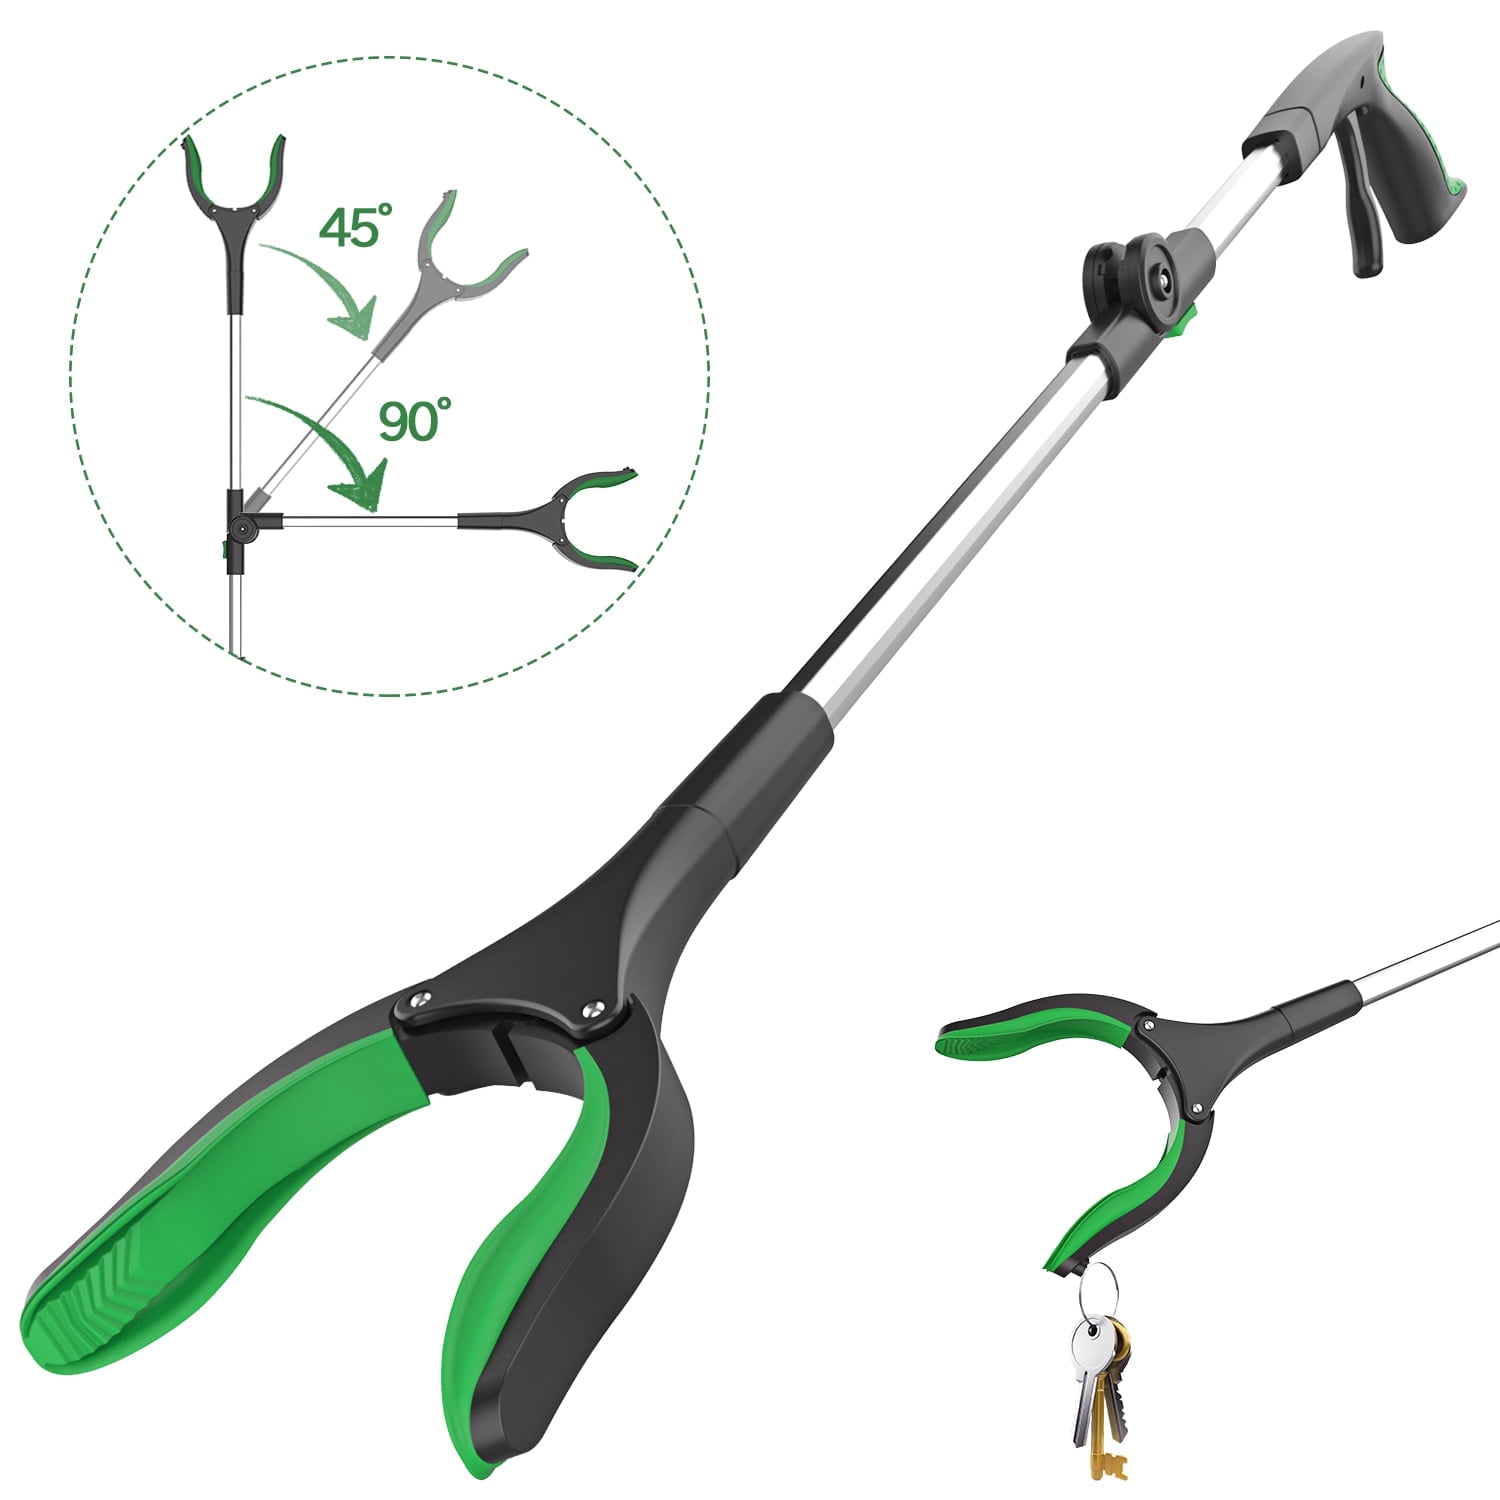 Reacher Grabber Tool, ORFELD Lightweight Handy Trash Claw Grabber Reaching  Assist Pick up Tool Green 